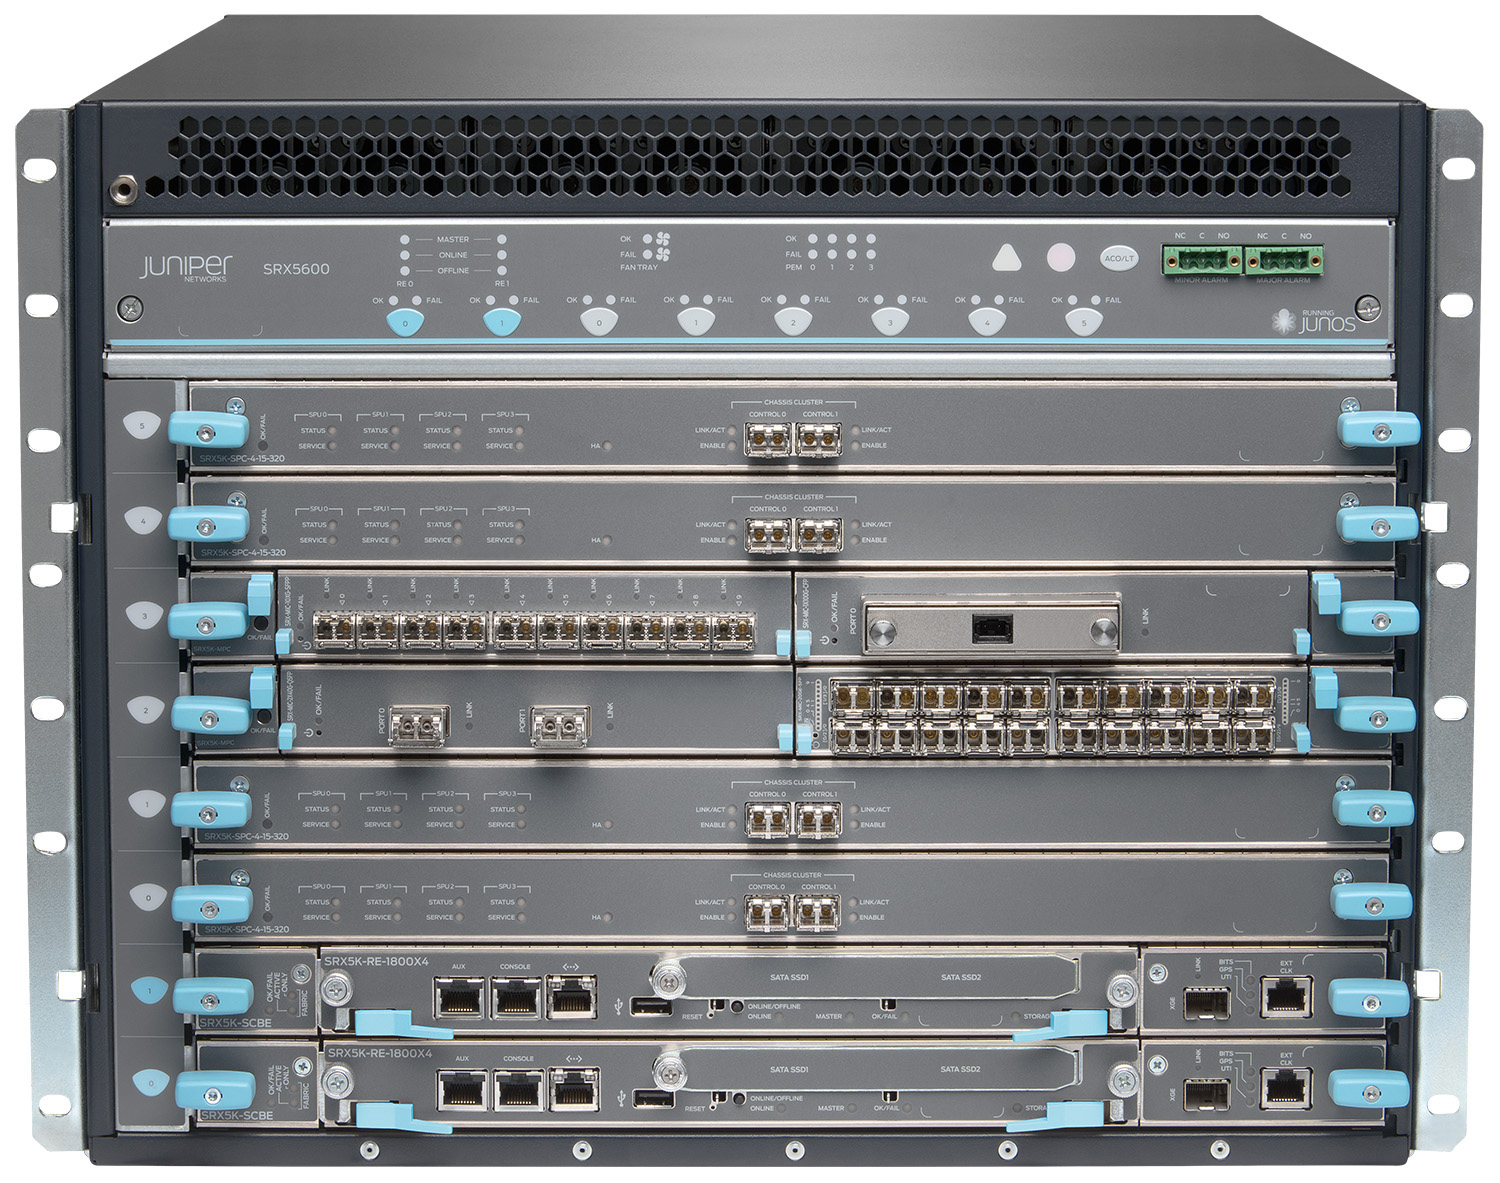 SRX5600 Series Juniper Networks SRX5600 Series